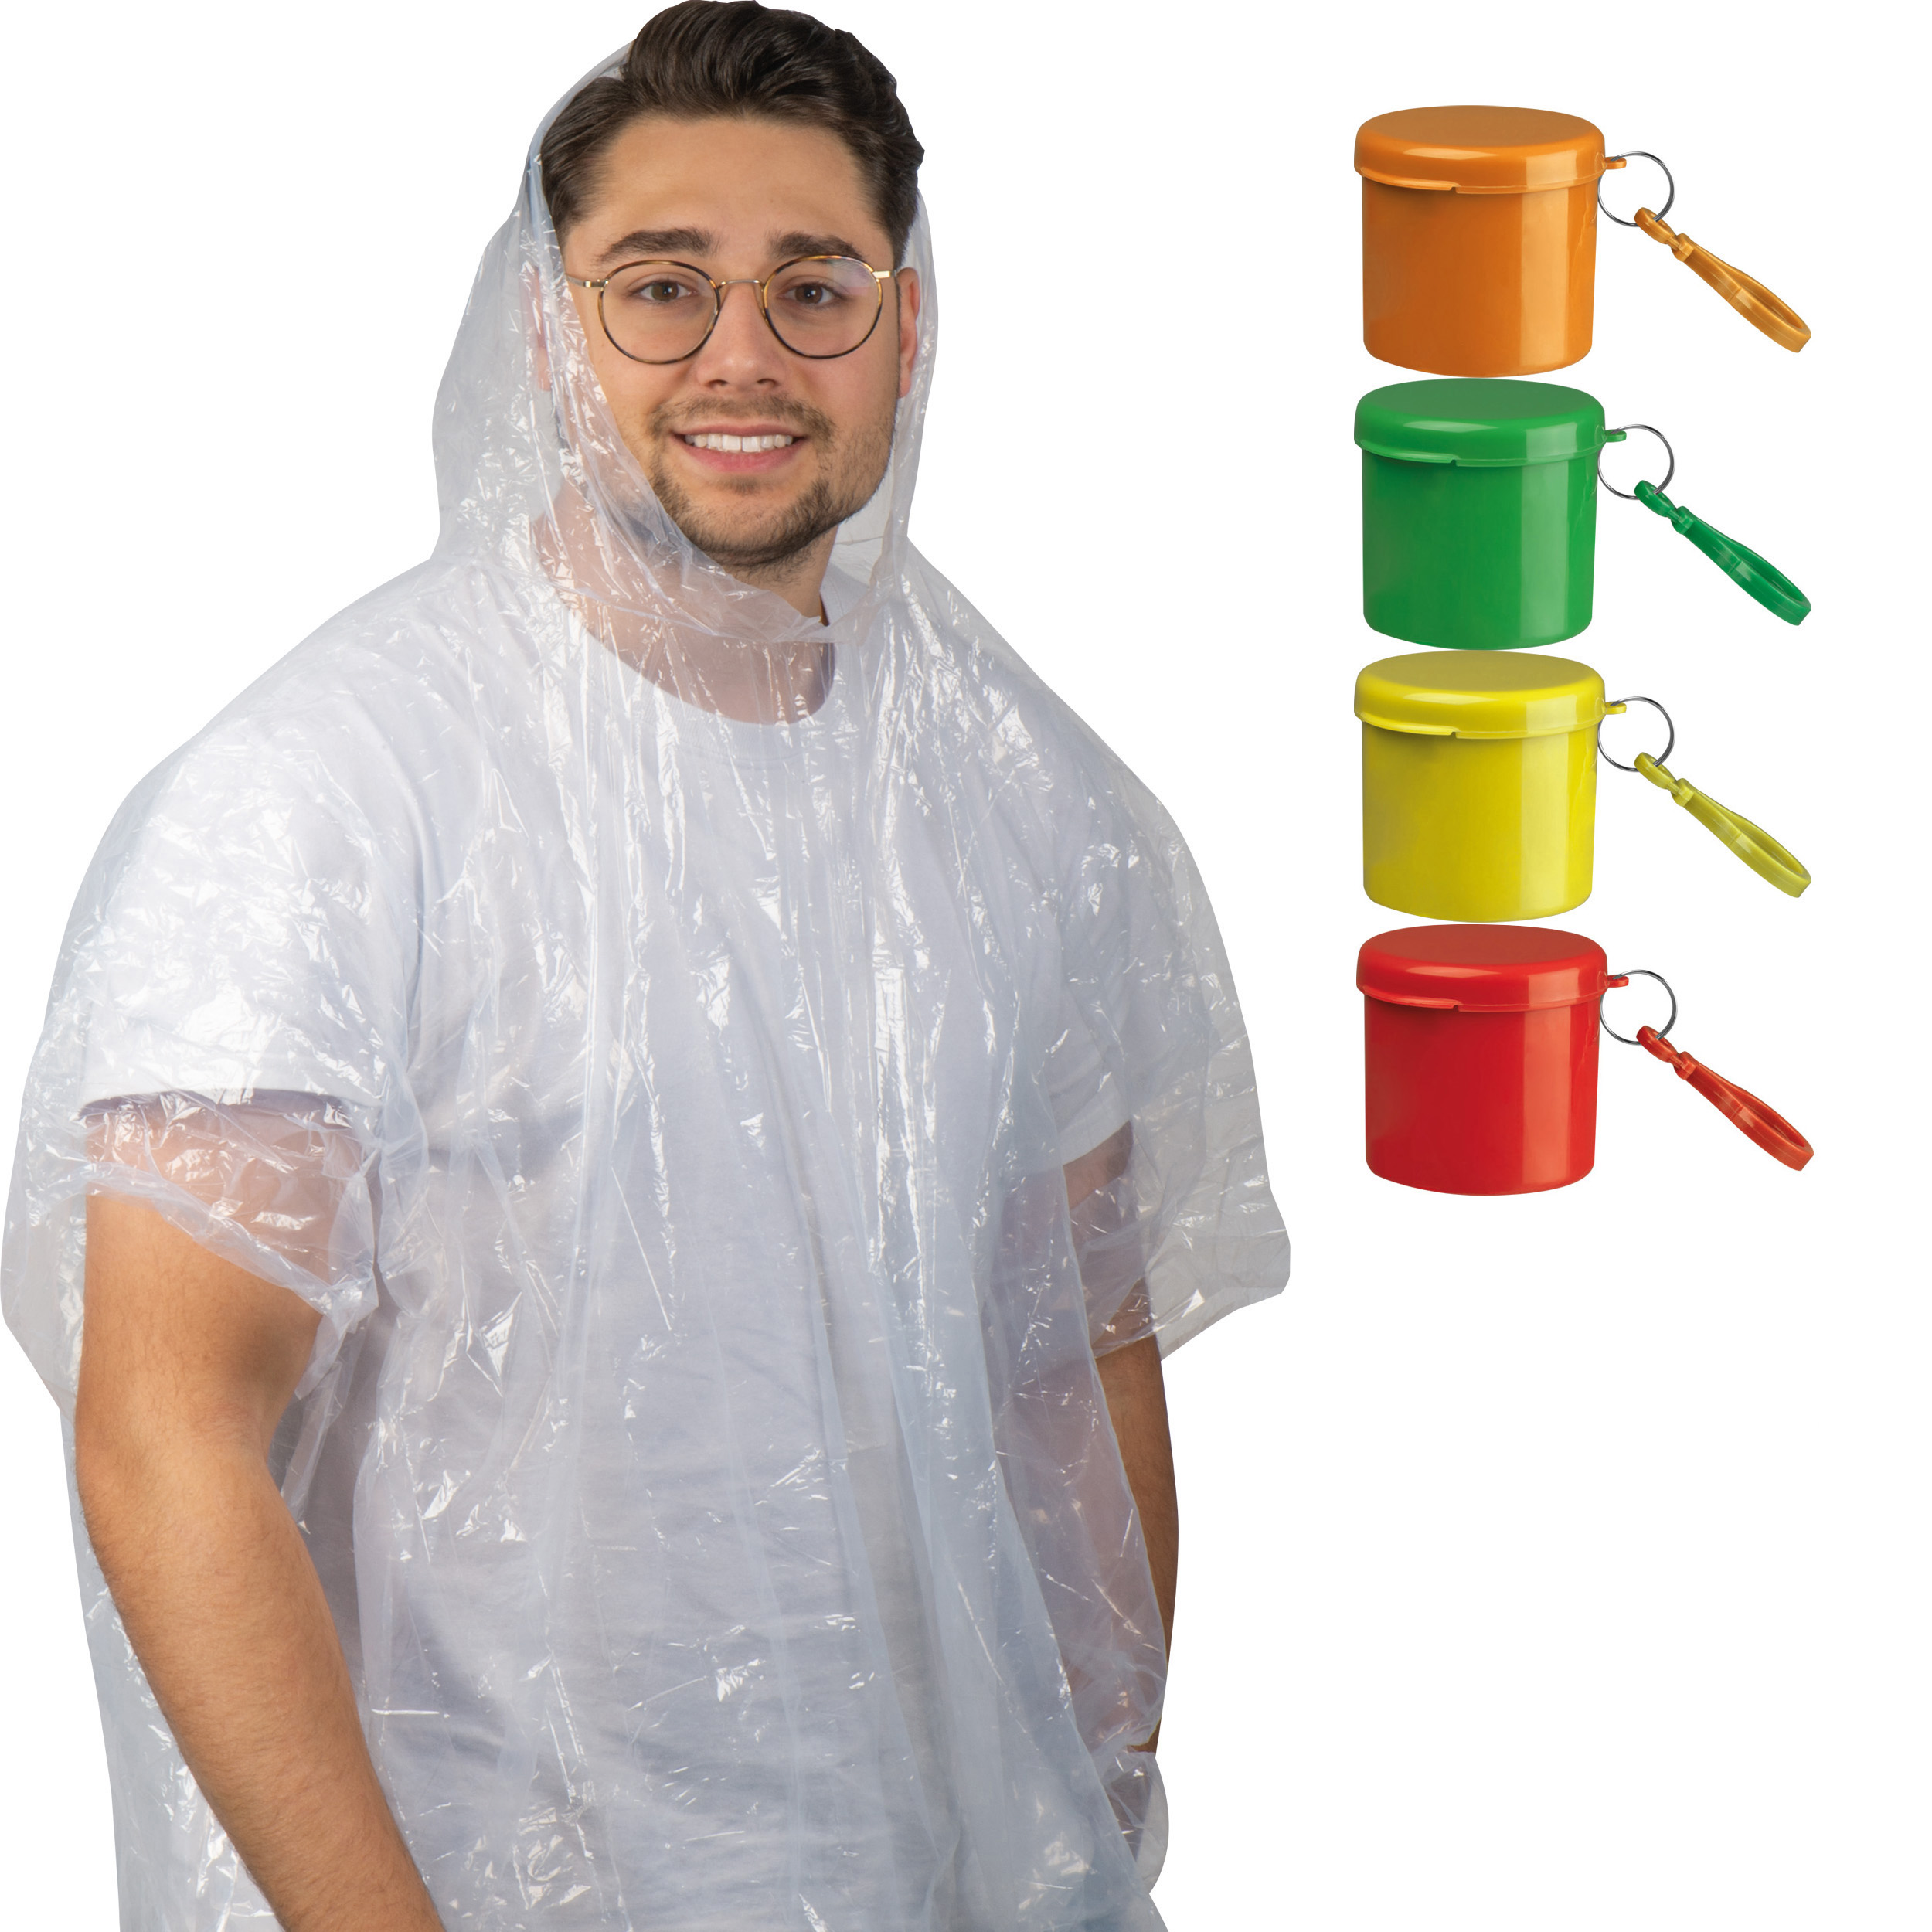 Regenponcho in einem Kunststoffdöschen